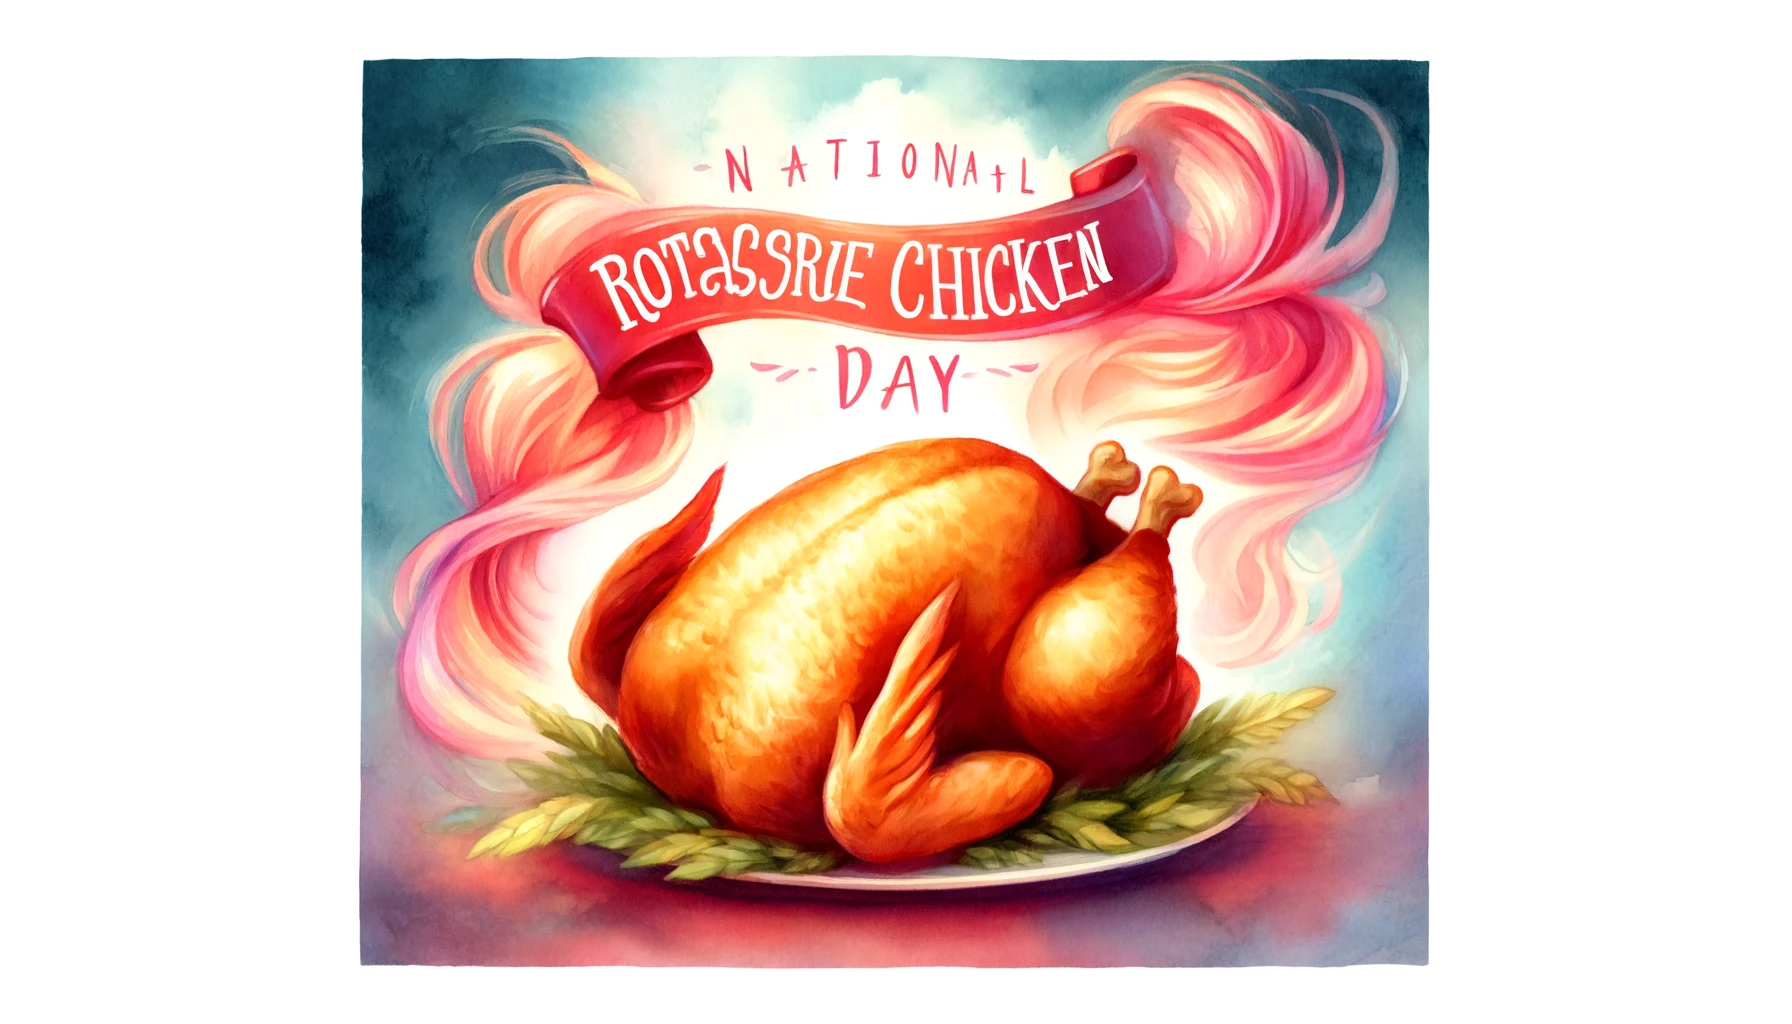 National Rotisserie Chicken Day